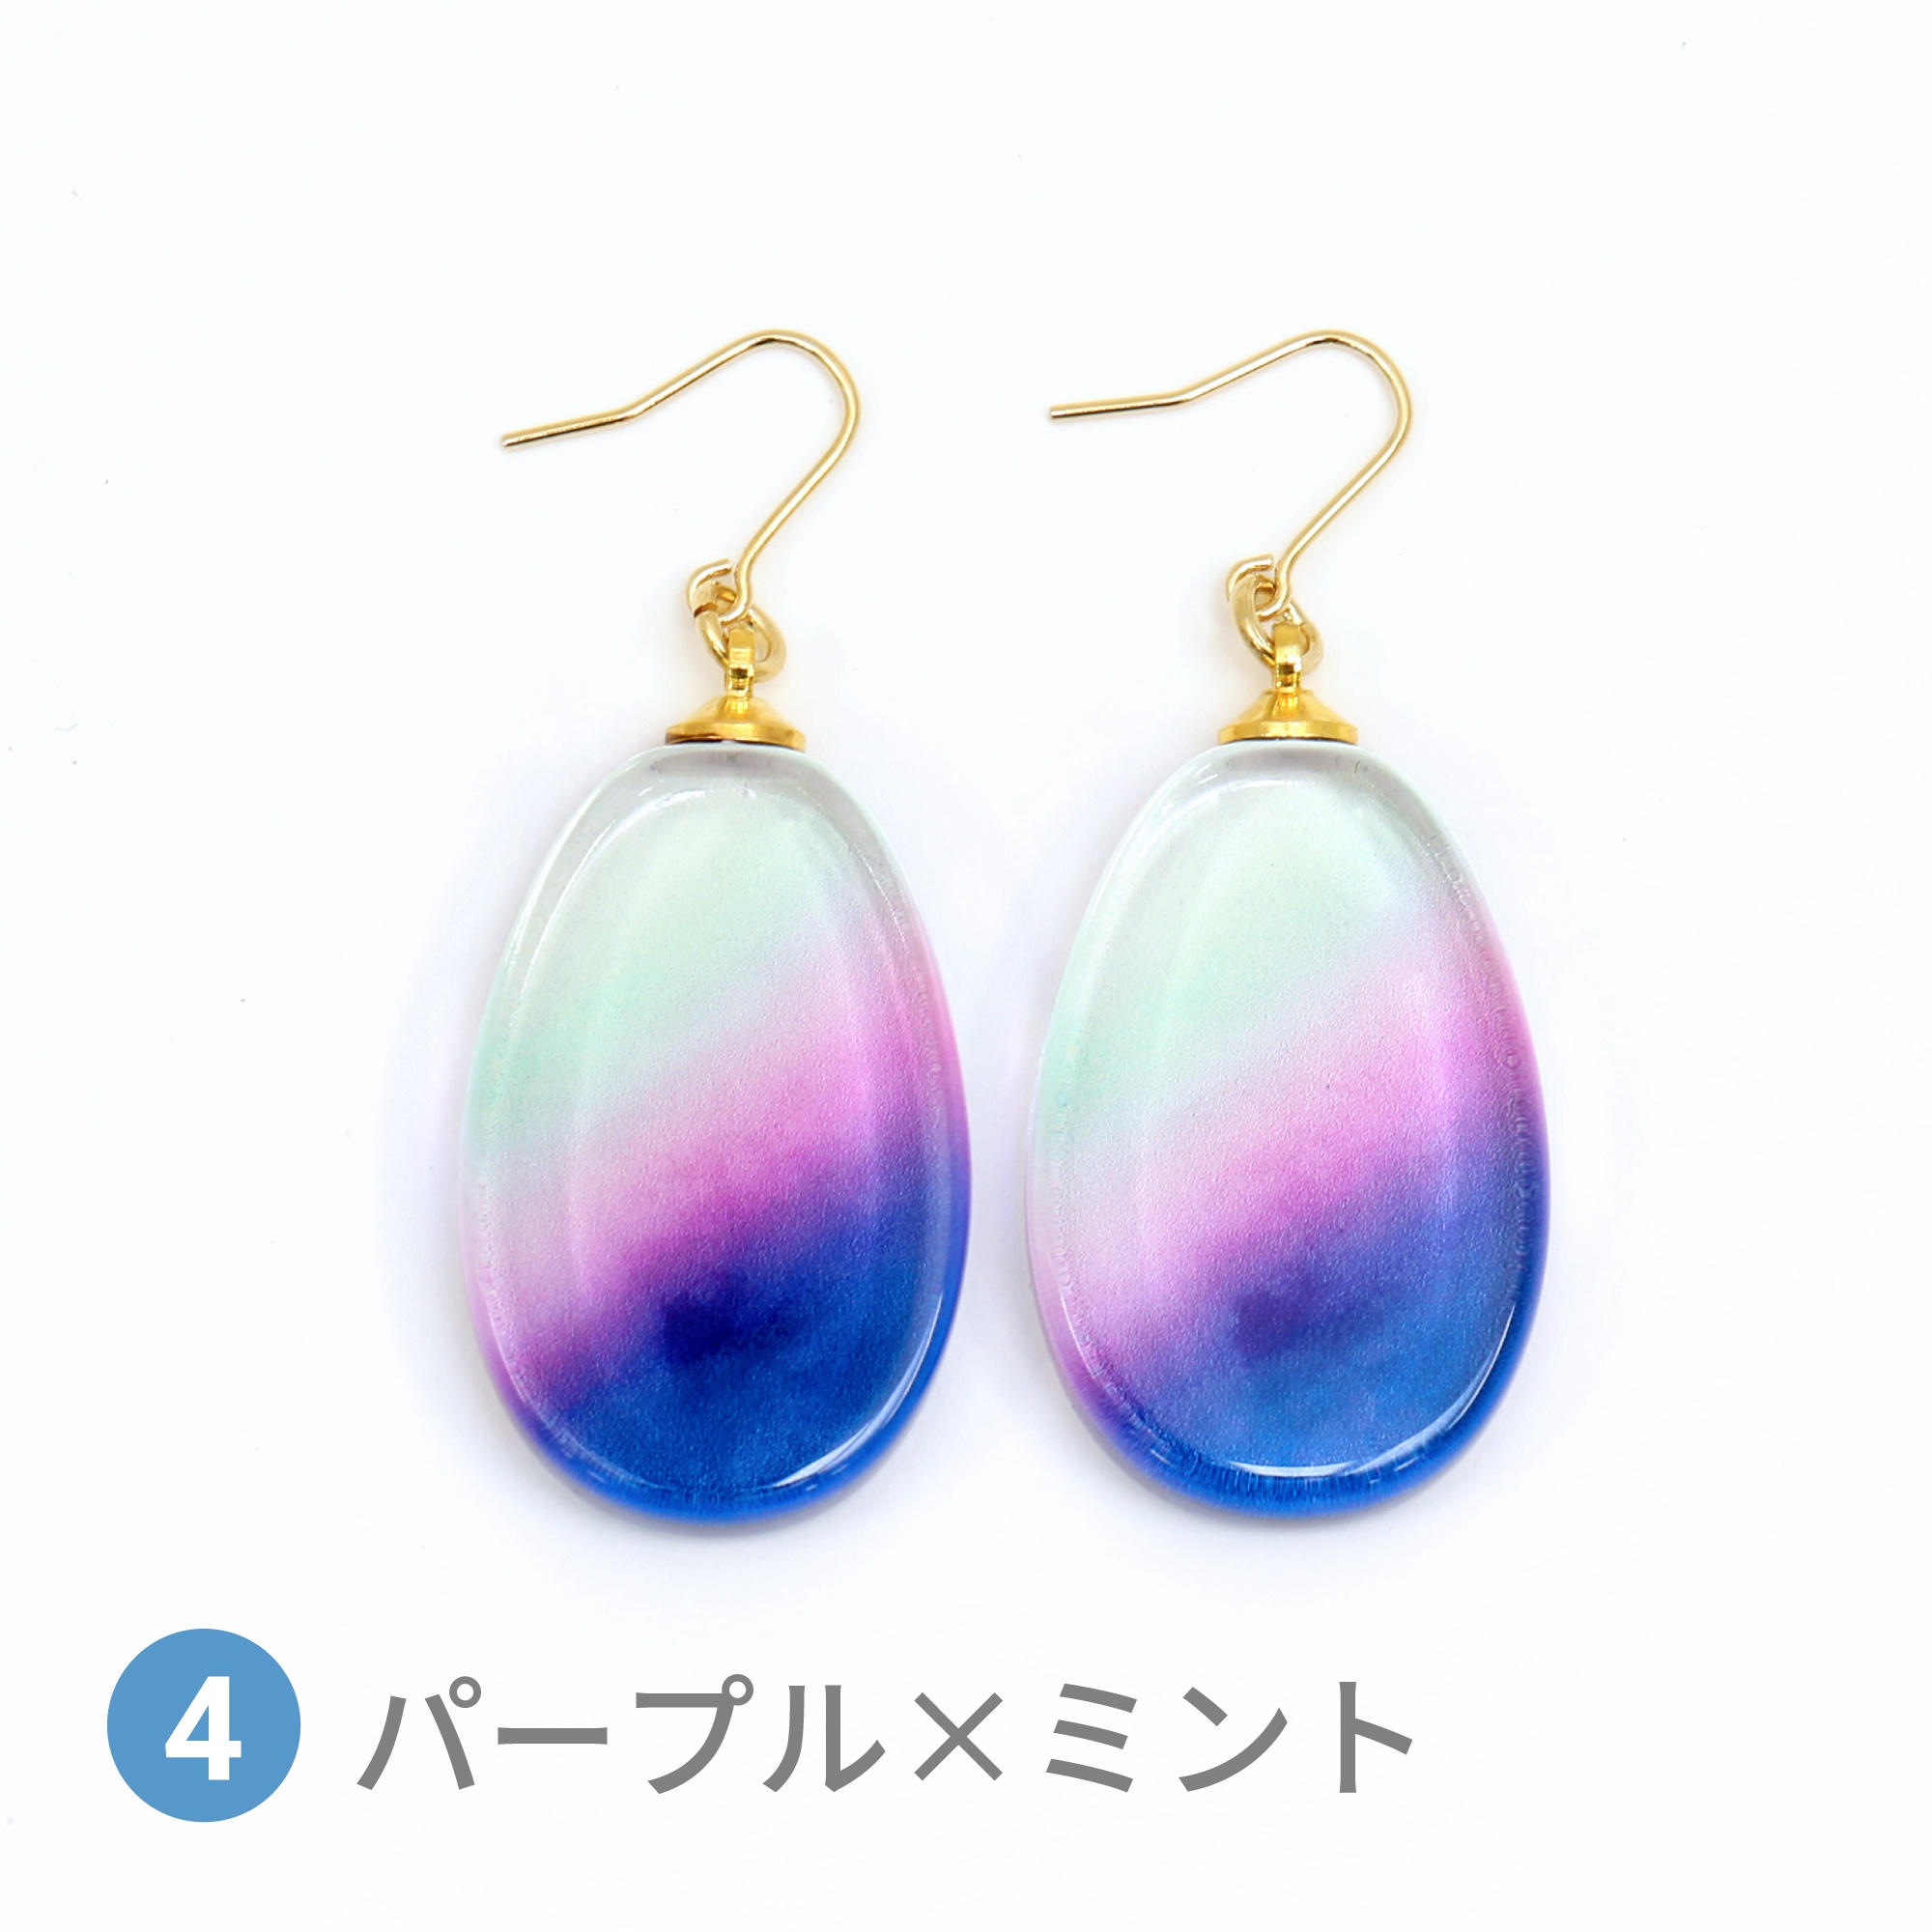 Glass accessories Pierced Earring AURORA purple&mint drop shape